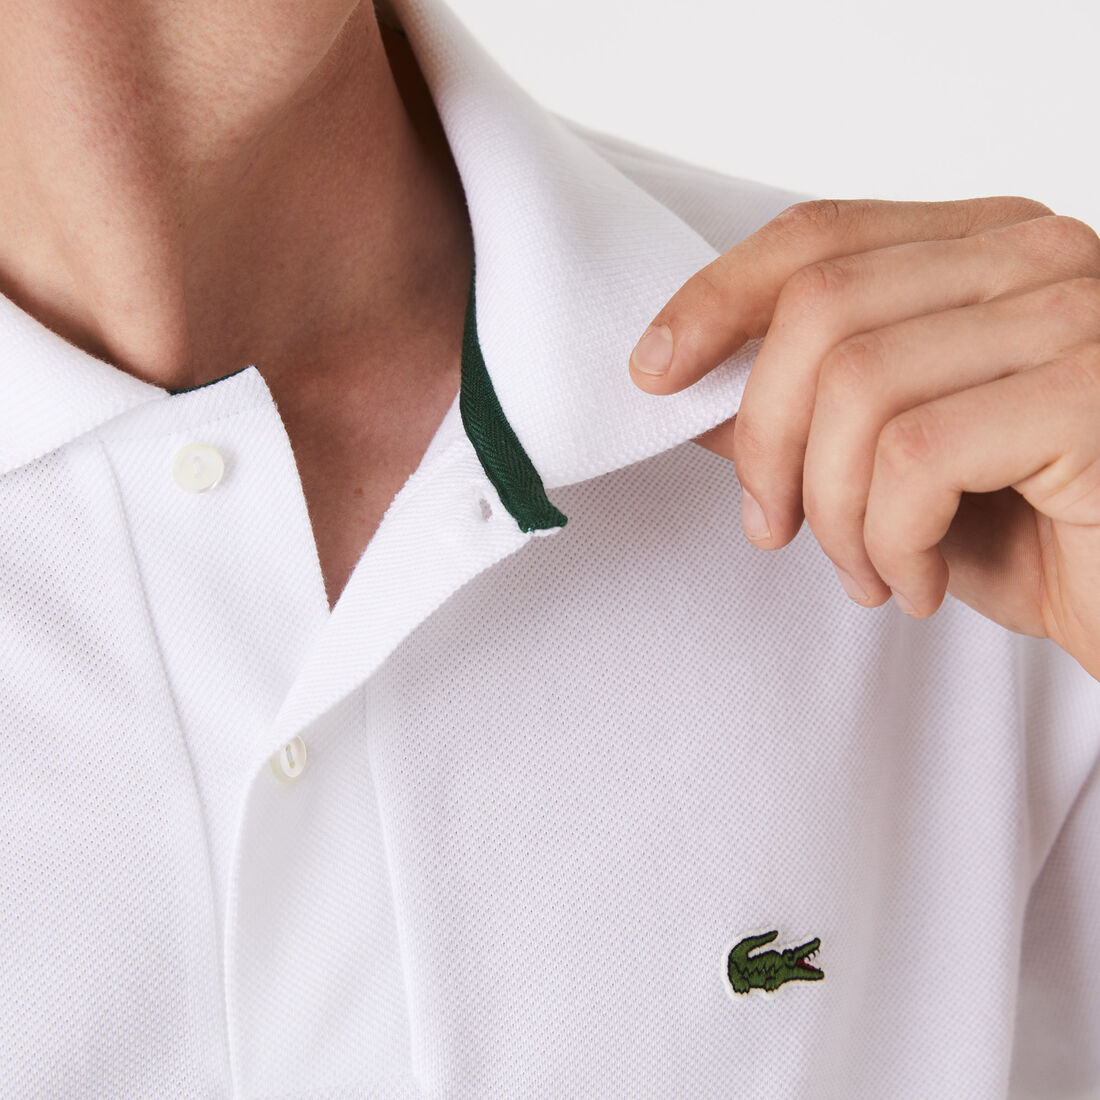 Lacoste Klassische Fit L.12.21 Organic Baumwoll Piqué Polo Shirts Herren Weiß | EVDS-95304